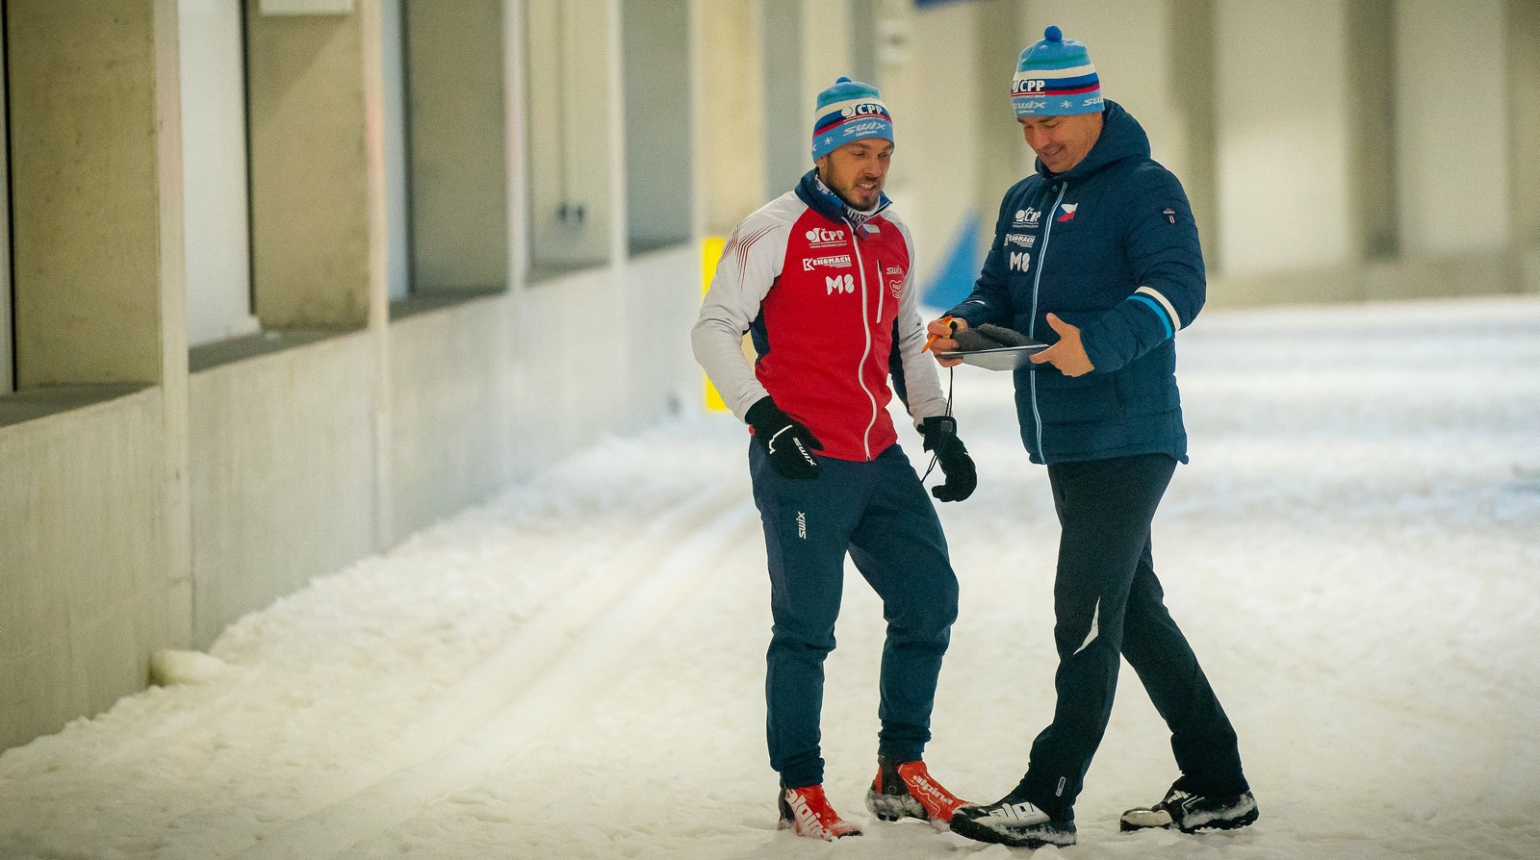 Tour de Ski: Co udělalo reprezentačním trenérům ve Val Müstair největší radost? A co je nejvíc zklamalo?